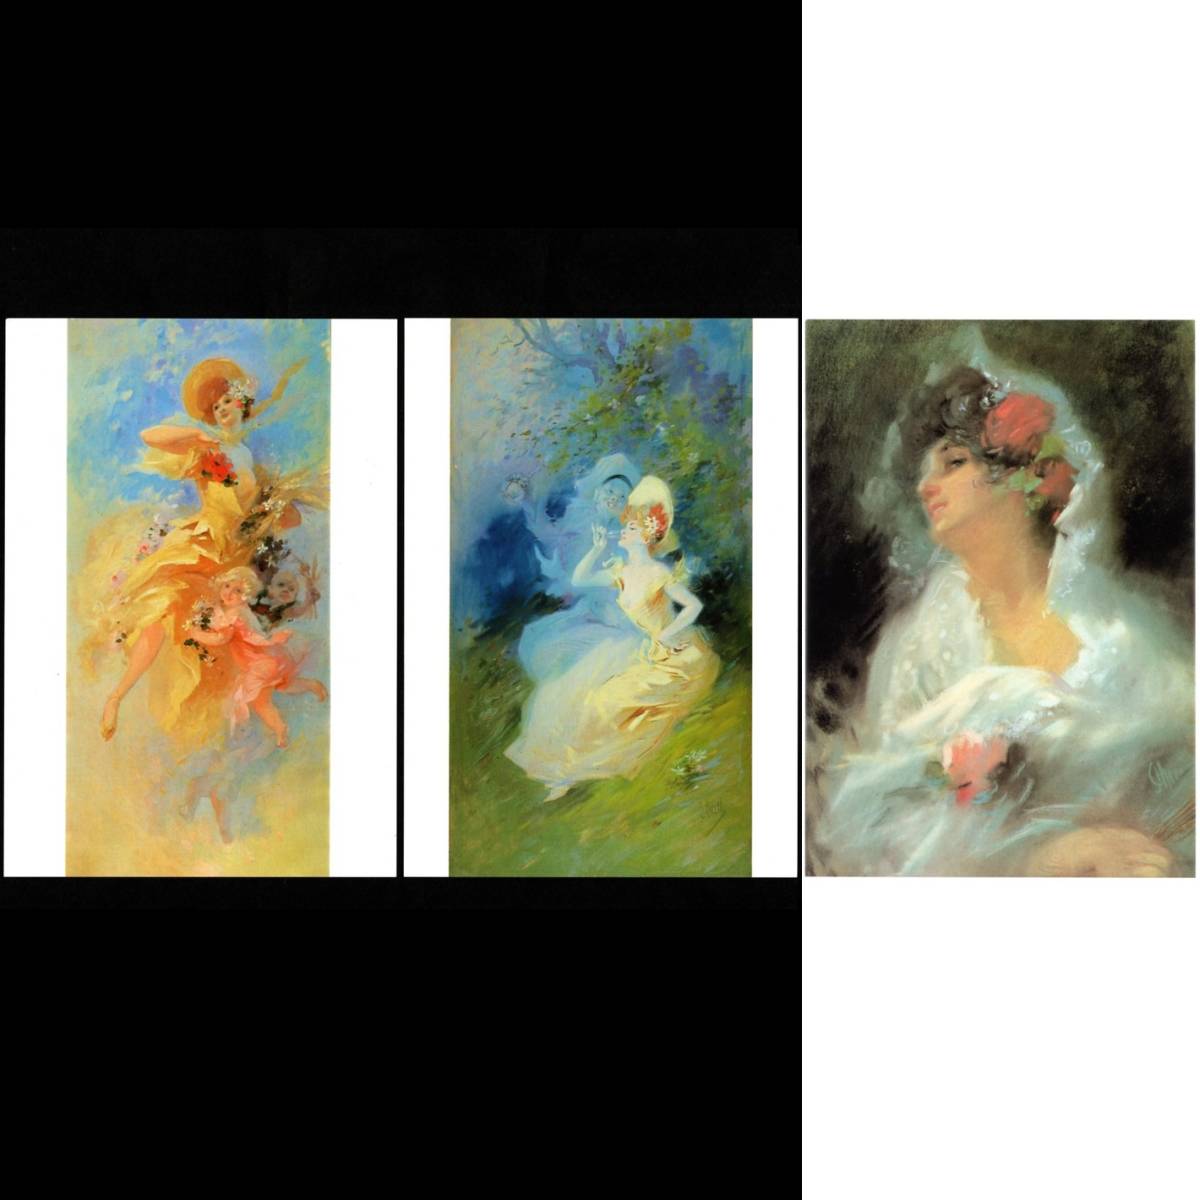 Postkarte Kunstausstellung Lautrec und Chéret Ausstellung 1985-1986 3er-Set Jules Chéret Sommer Eine Tasse Chianti Spanische Frau malt Postkarte, Drucksache, Postkarte, Postkarte, Andere